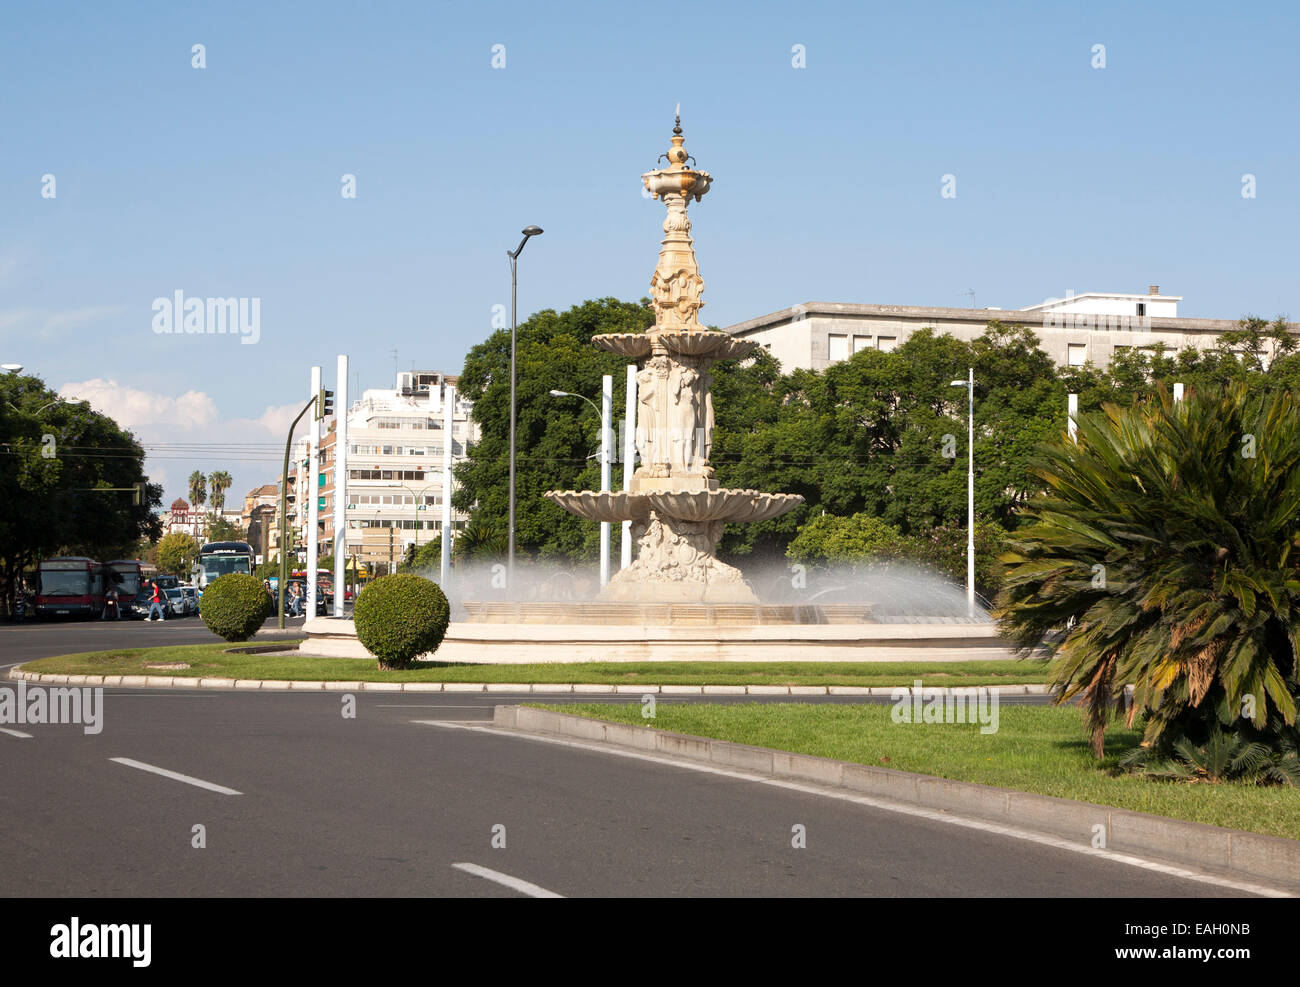 Brunnen und Skulpturen in einem Straße Kreisverkehr, Plaza de Don Juan de Austria, Sevilla, Spanien Stockfoto